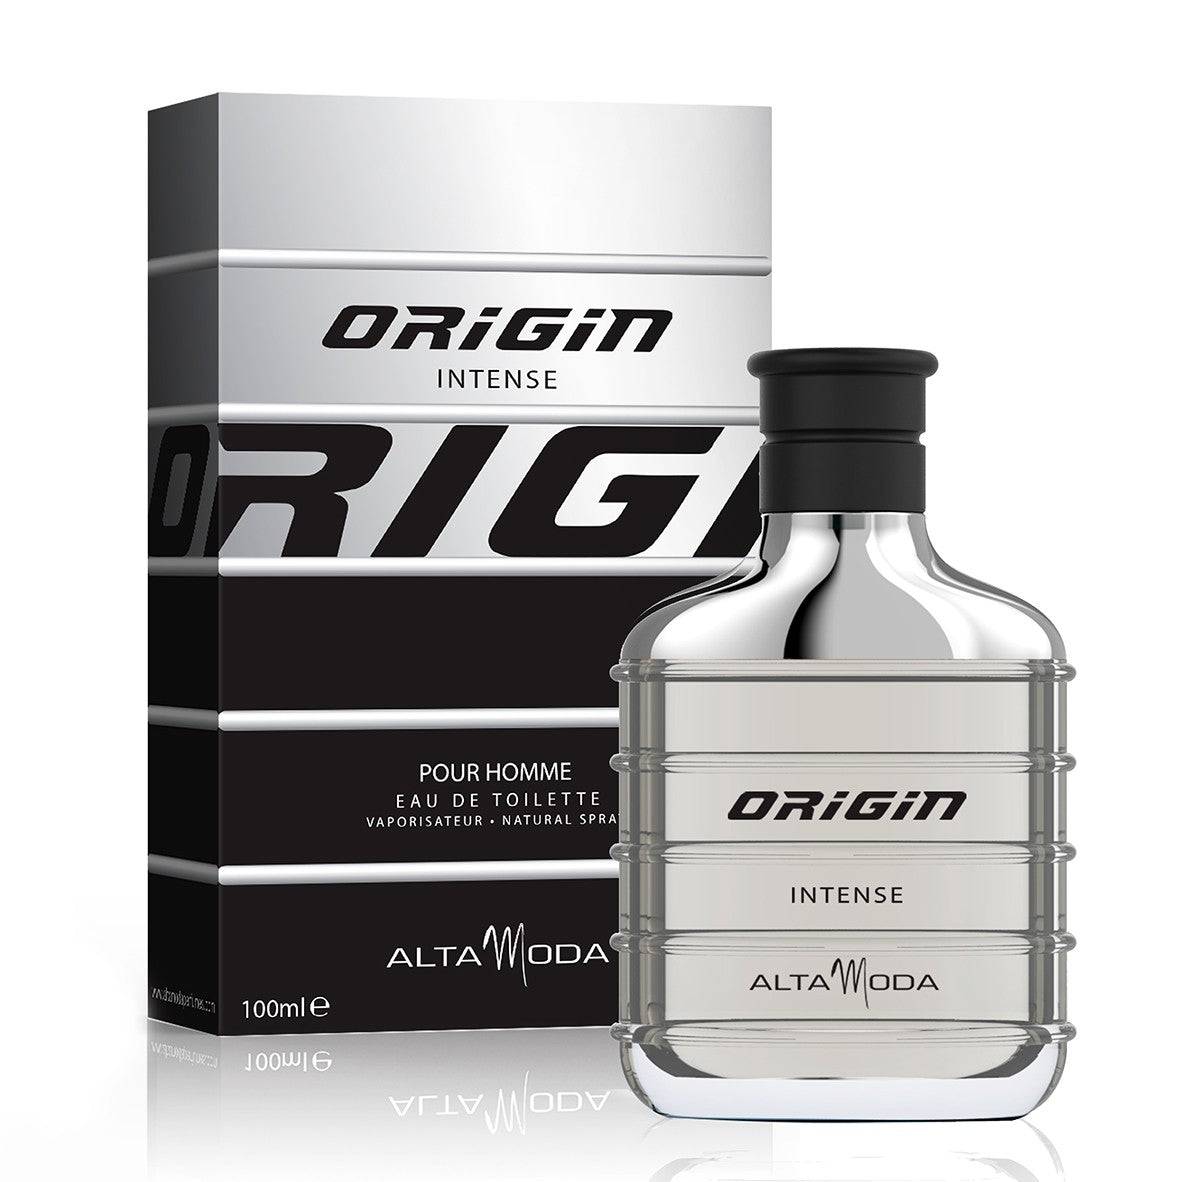 Origin Intense for Men EDT- 100 ML (3.4 oz) by Alta Moda (BOTTLE WITH VELVET POUCH) - Intense oud